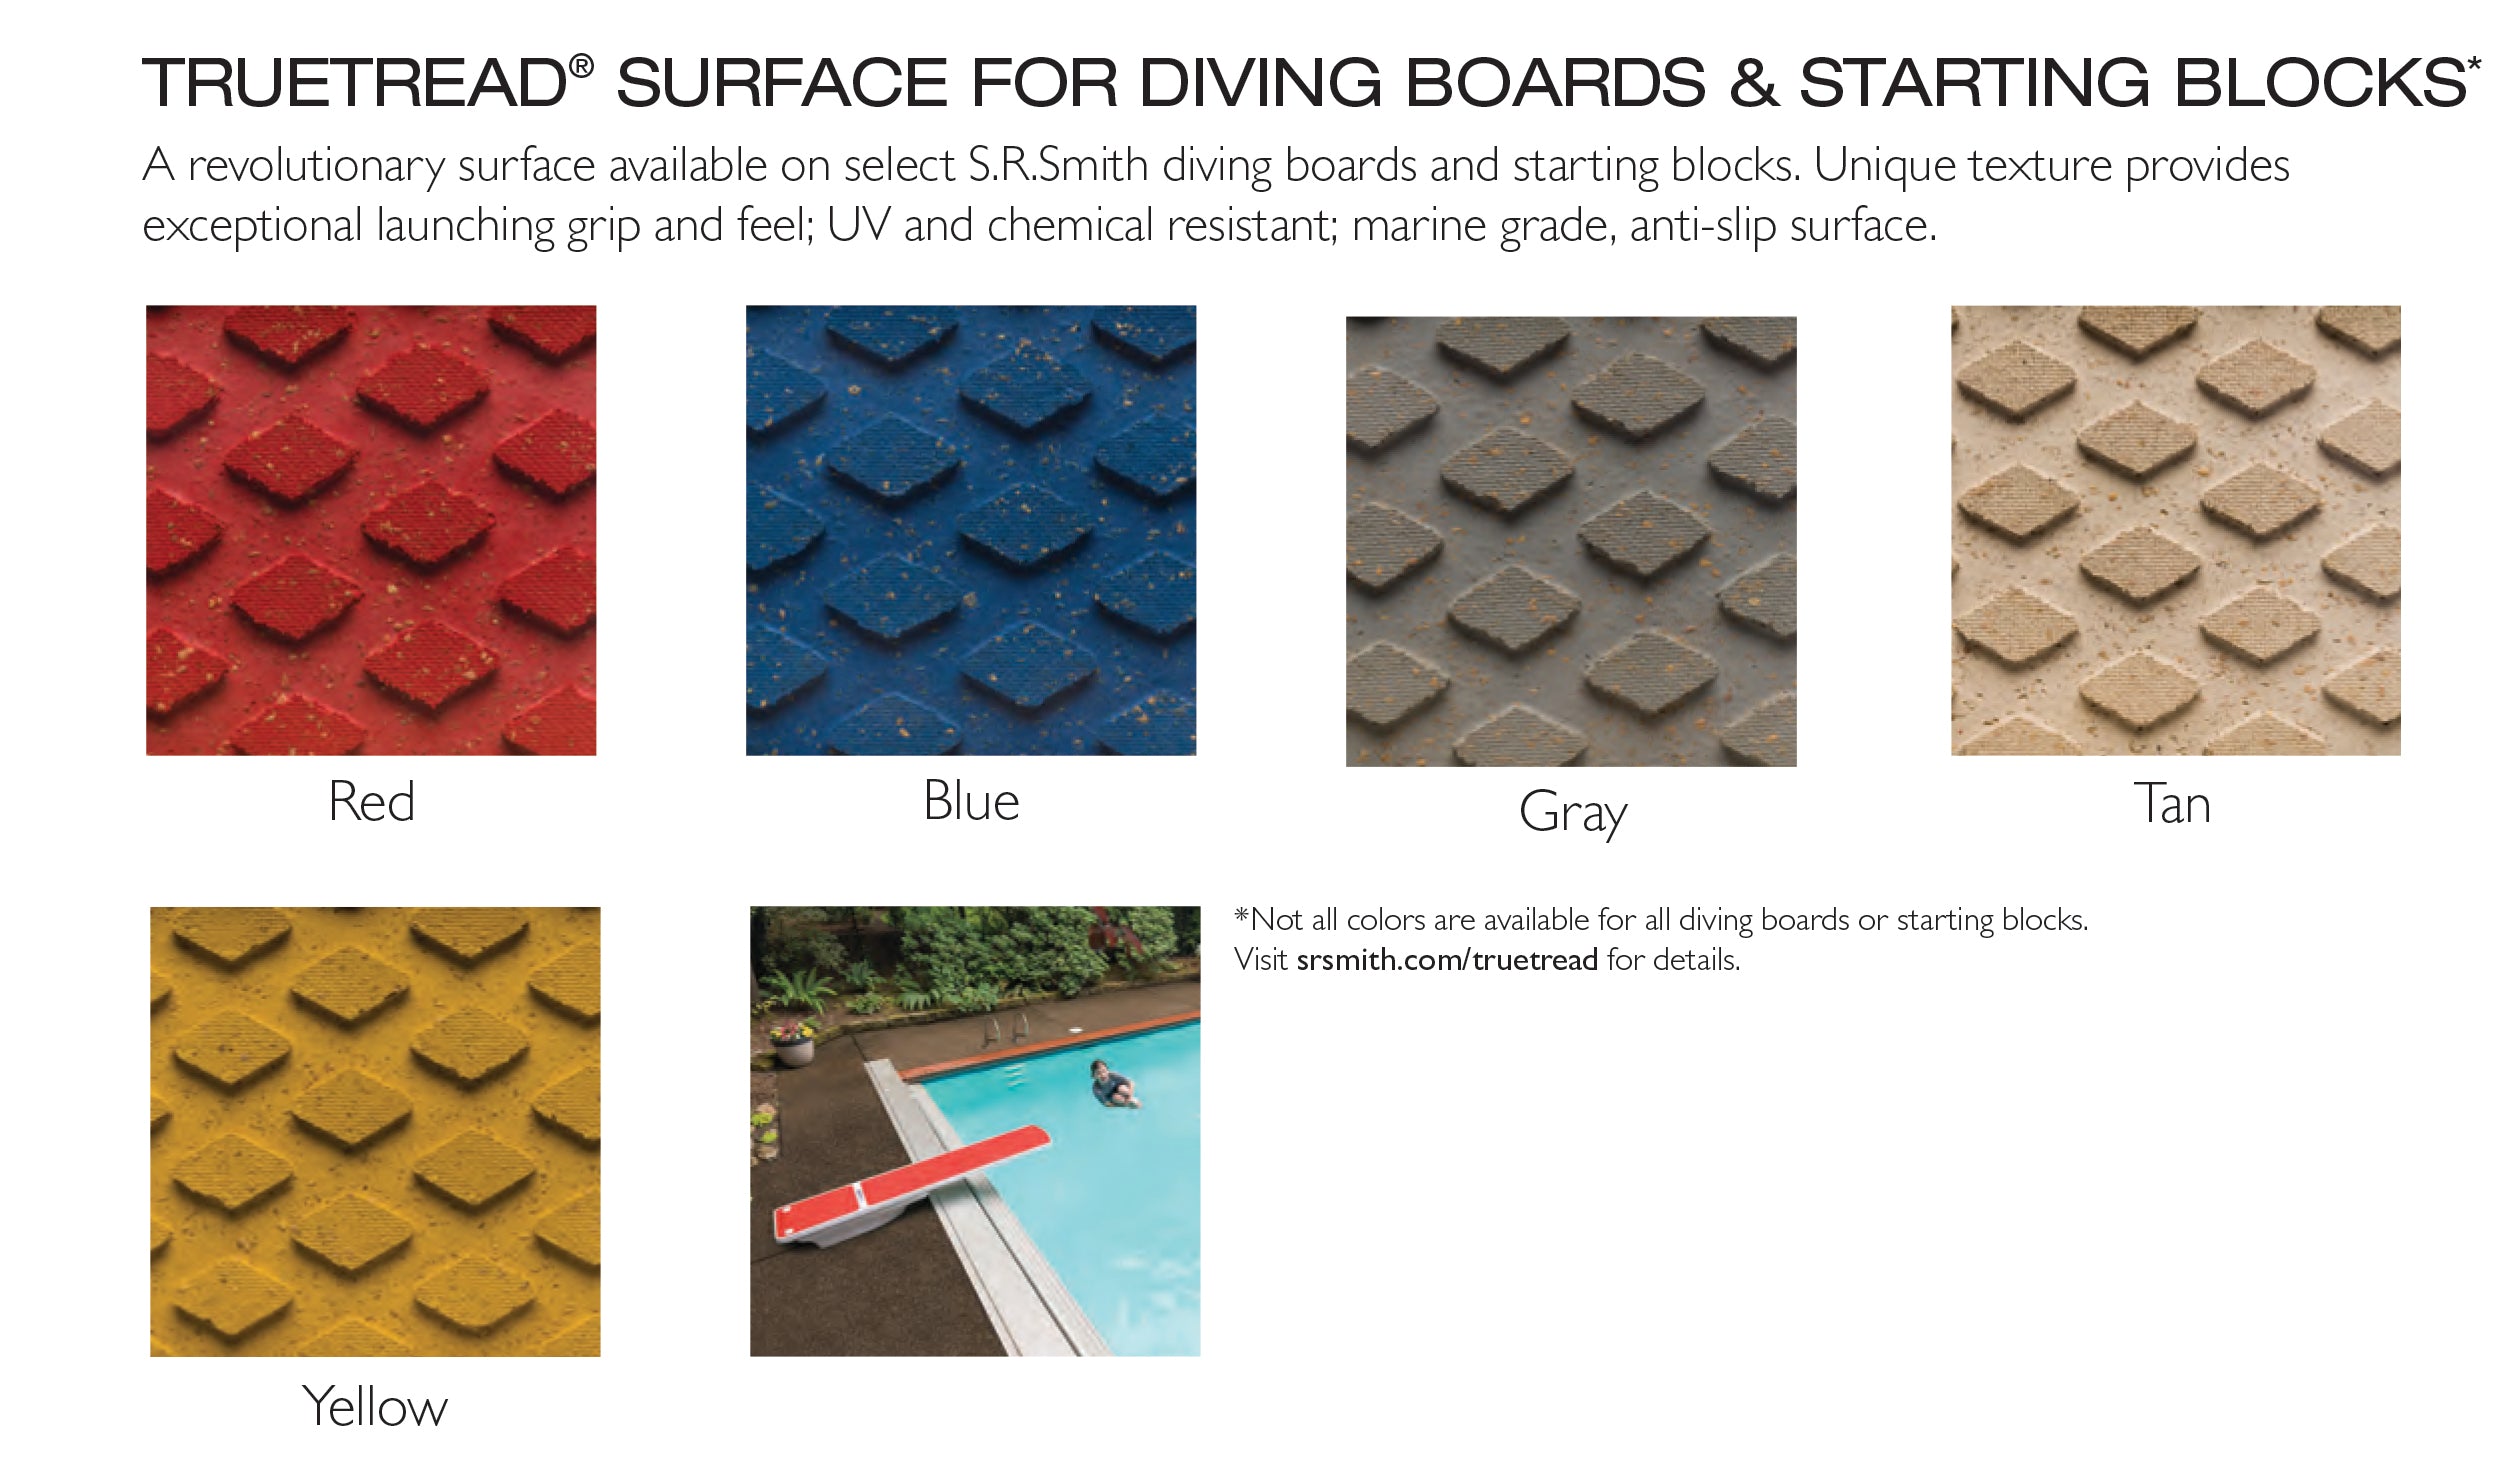 Salt Pool Jump System With 6 Foot TrueTread Board - White Stand With White Board and Tan TrueTread